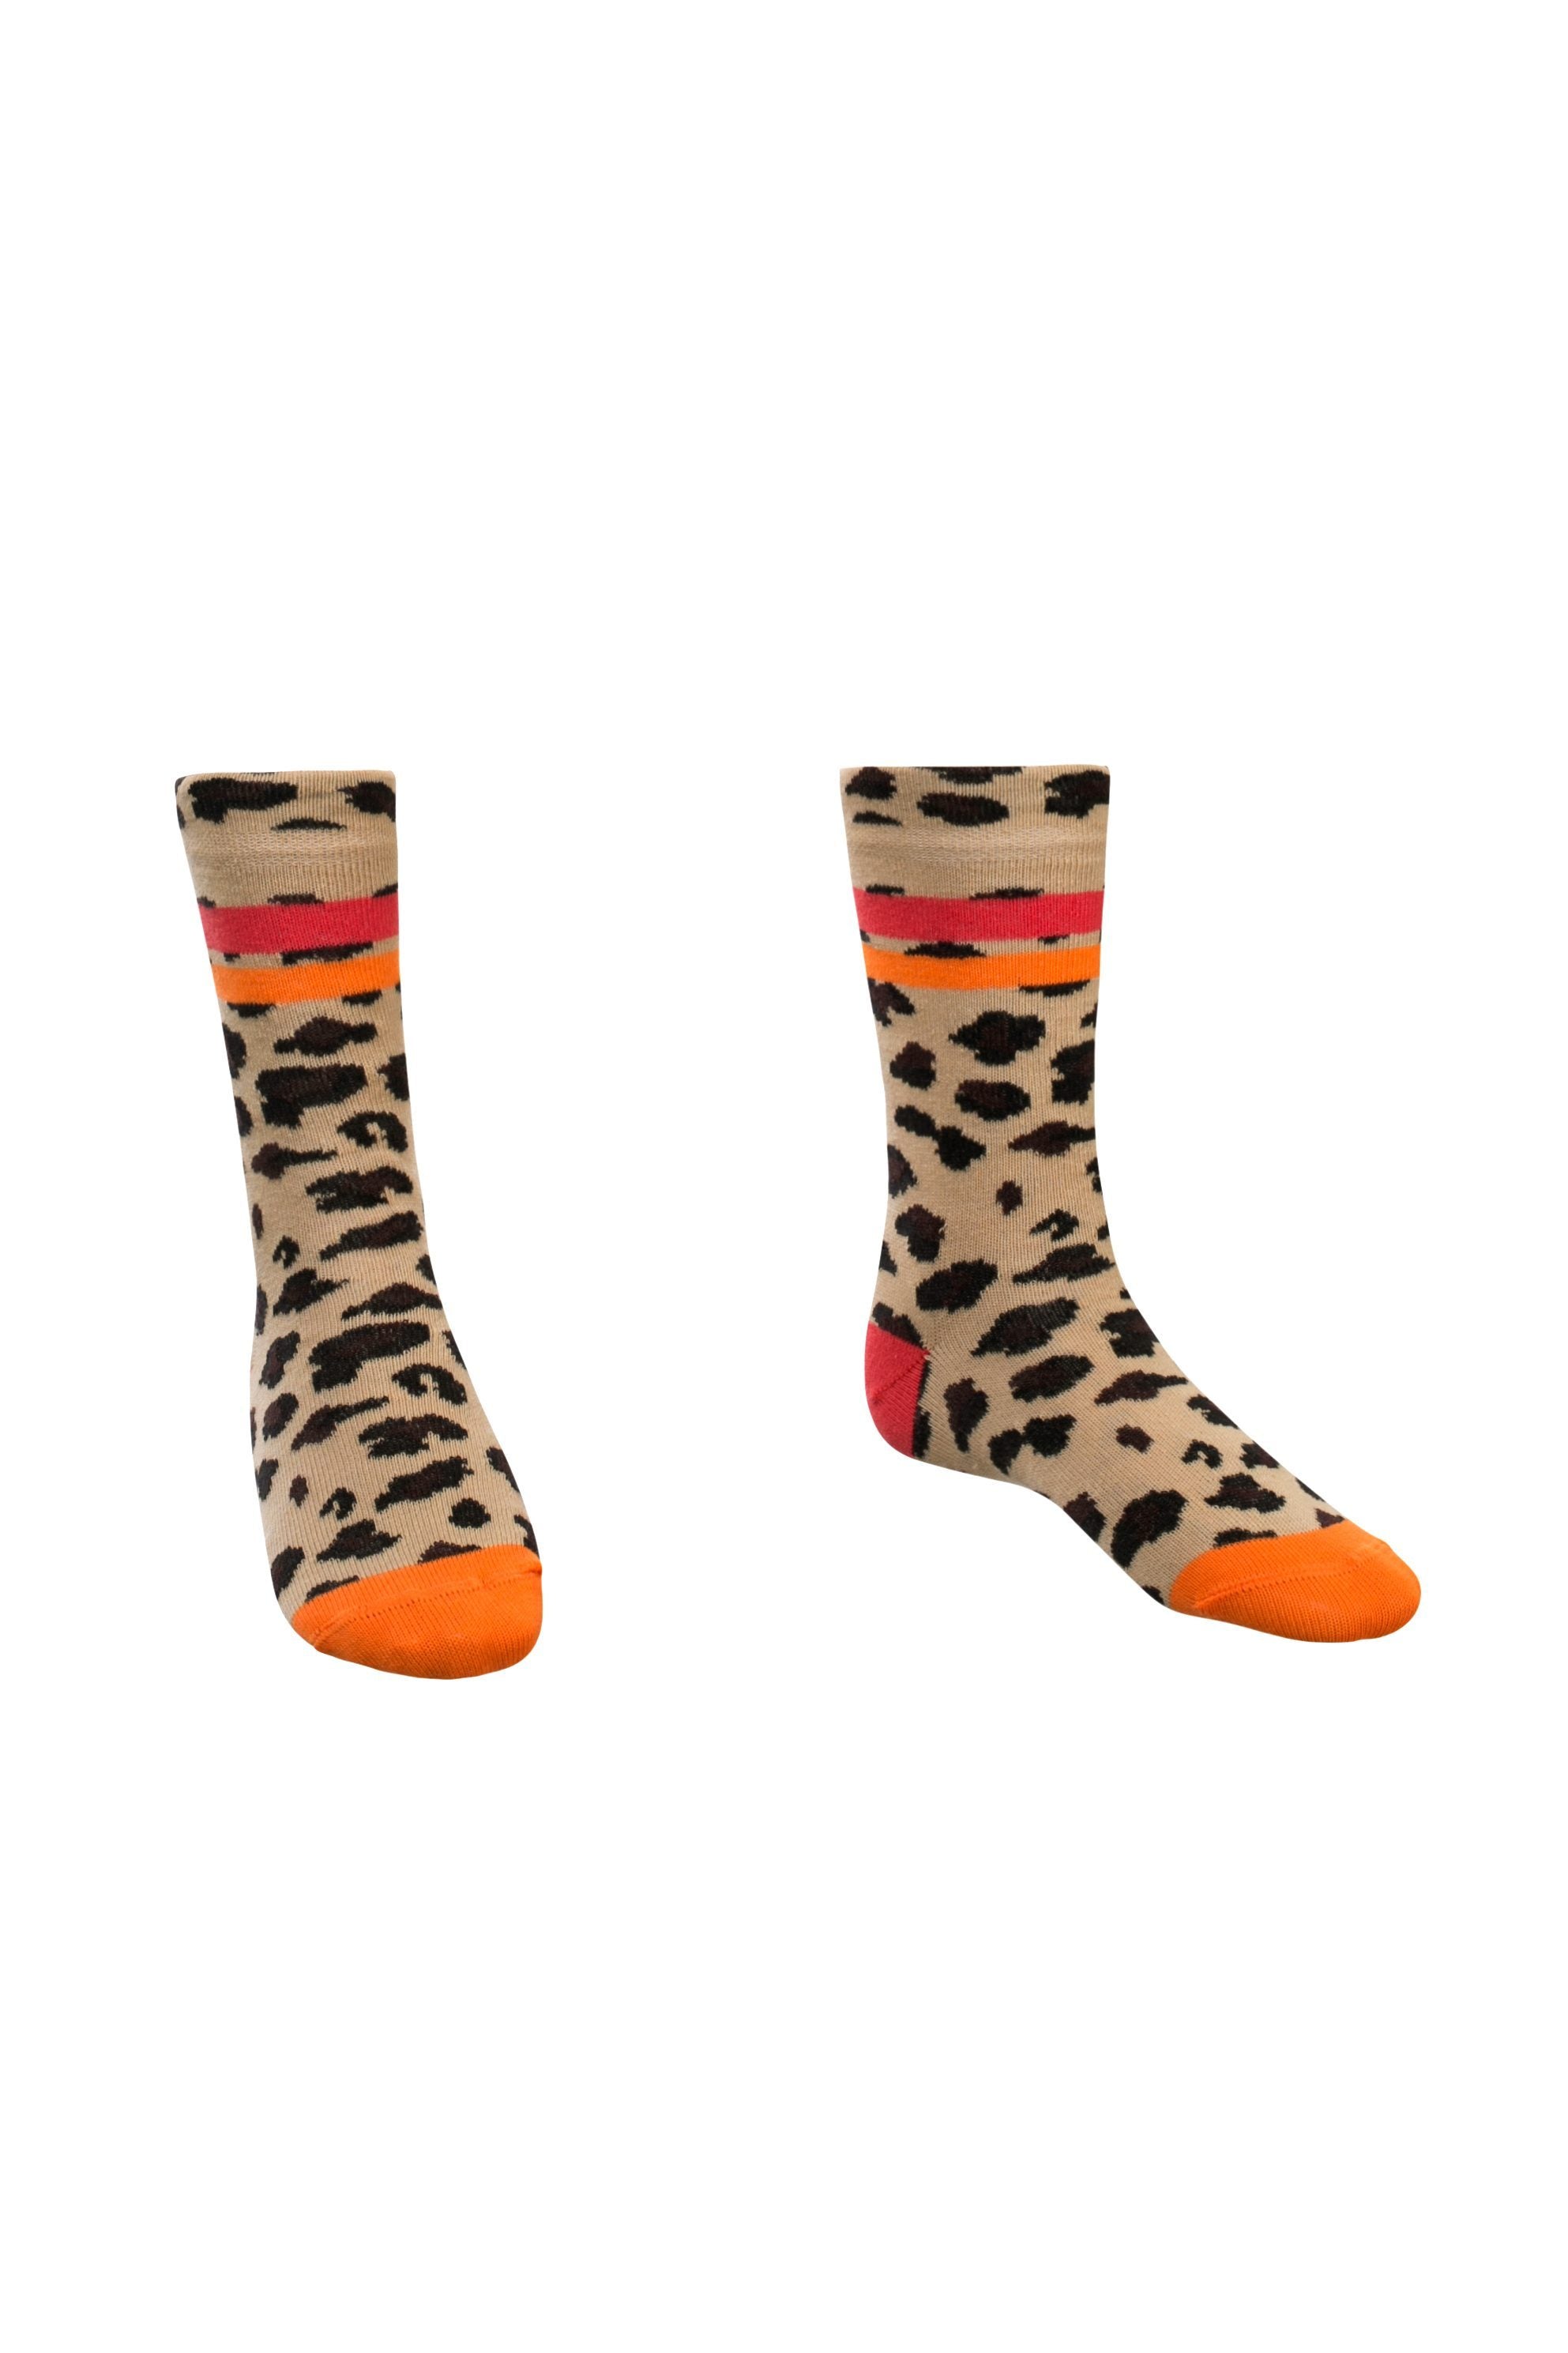 Meisjes Socks van Little Looxs in de kleur Jaguar in maat 27-30.